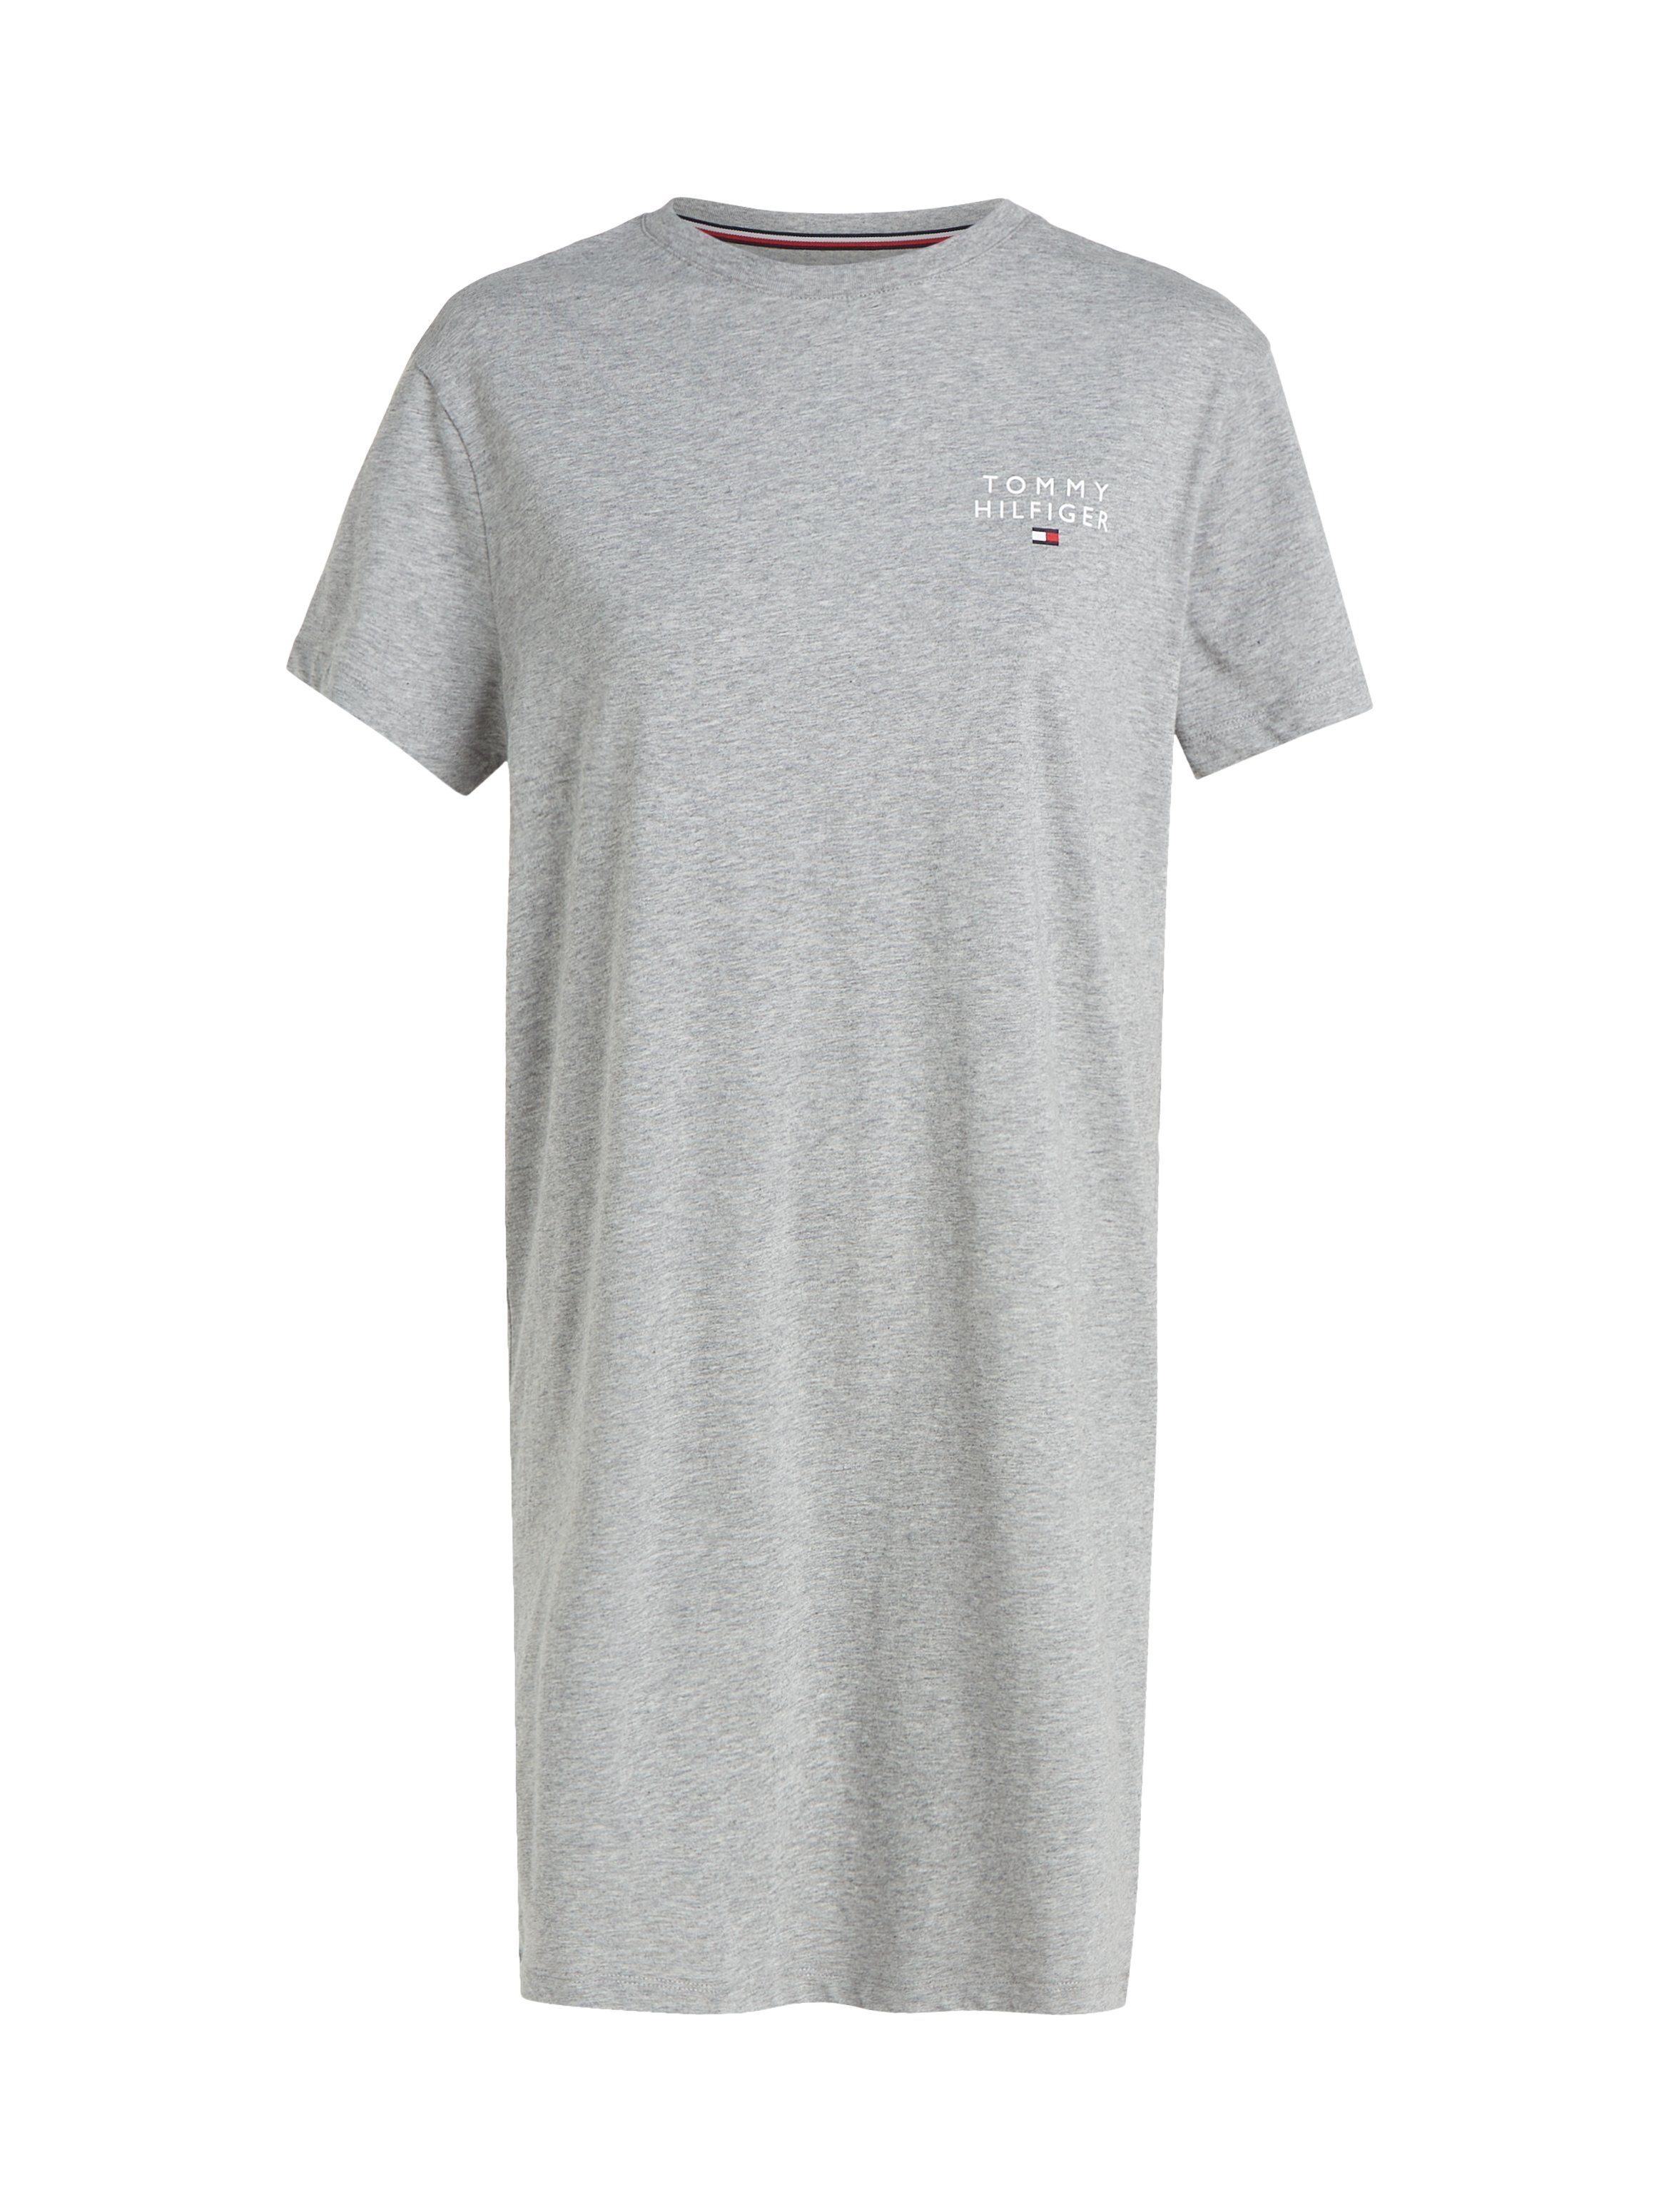 DRESS T-SHIRT SLEEVE Hilfiger Hilfiger SHORT Tommy mit Tommy Underwear Nachthemd Logoaufdruck